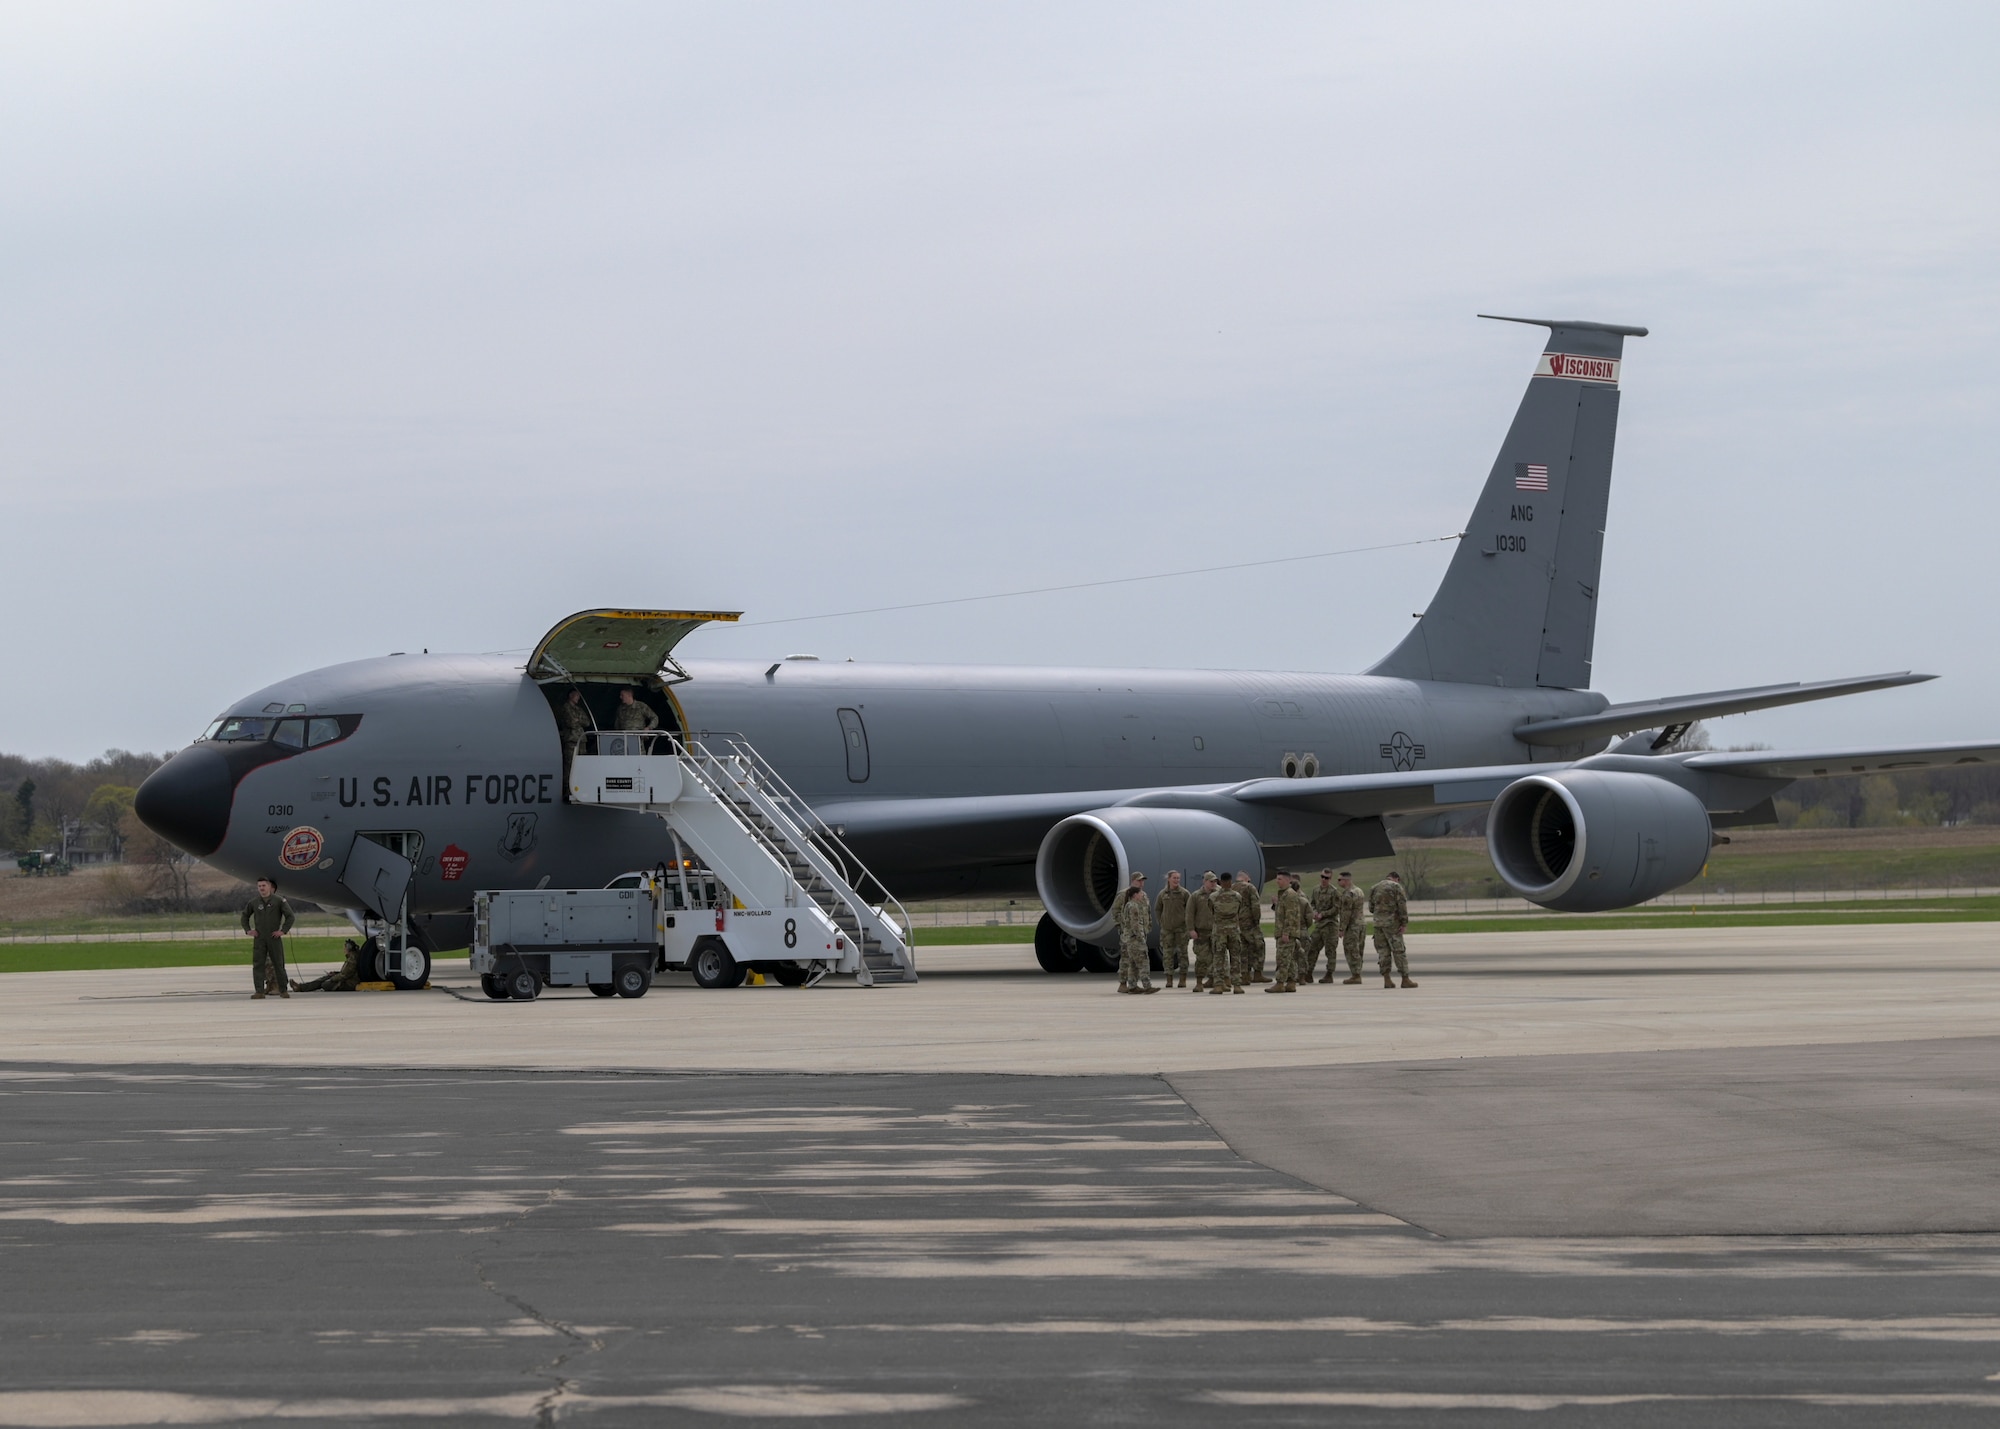 Airmen board a KC-135 Stratotanker aircraft.